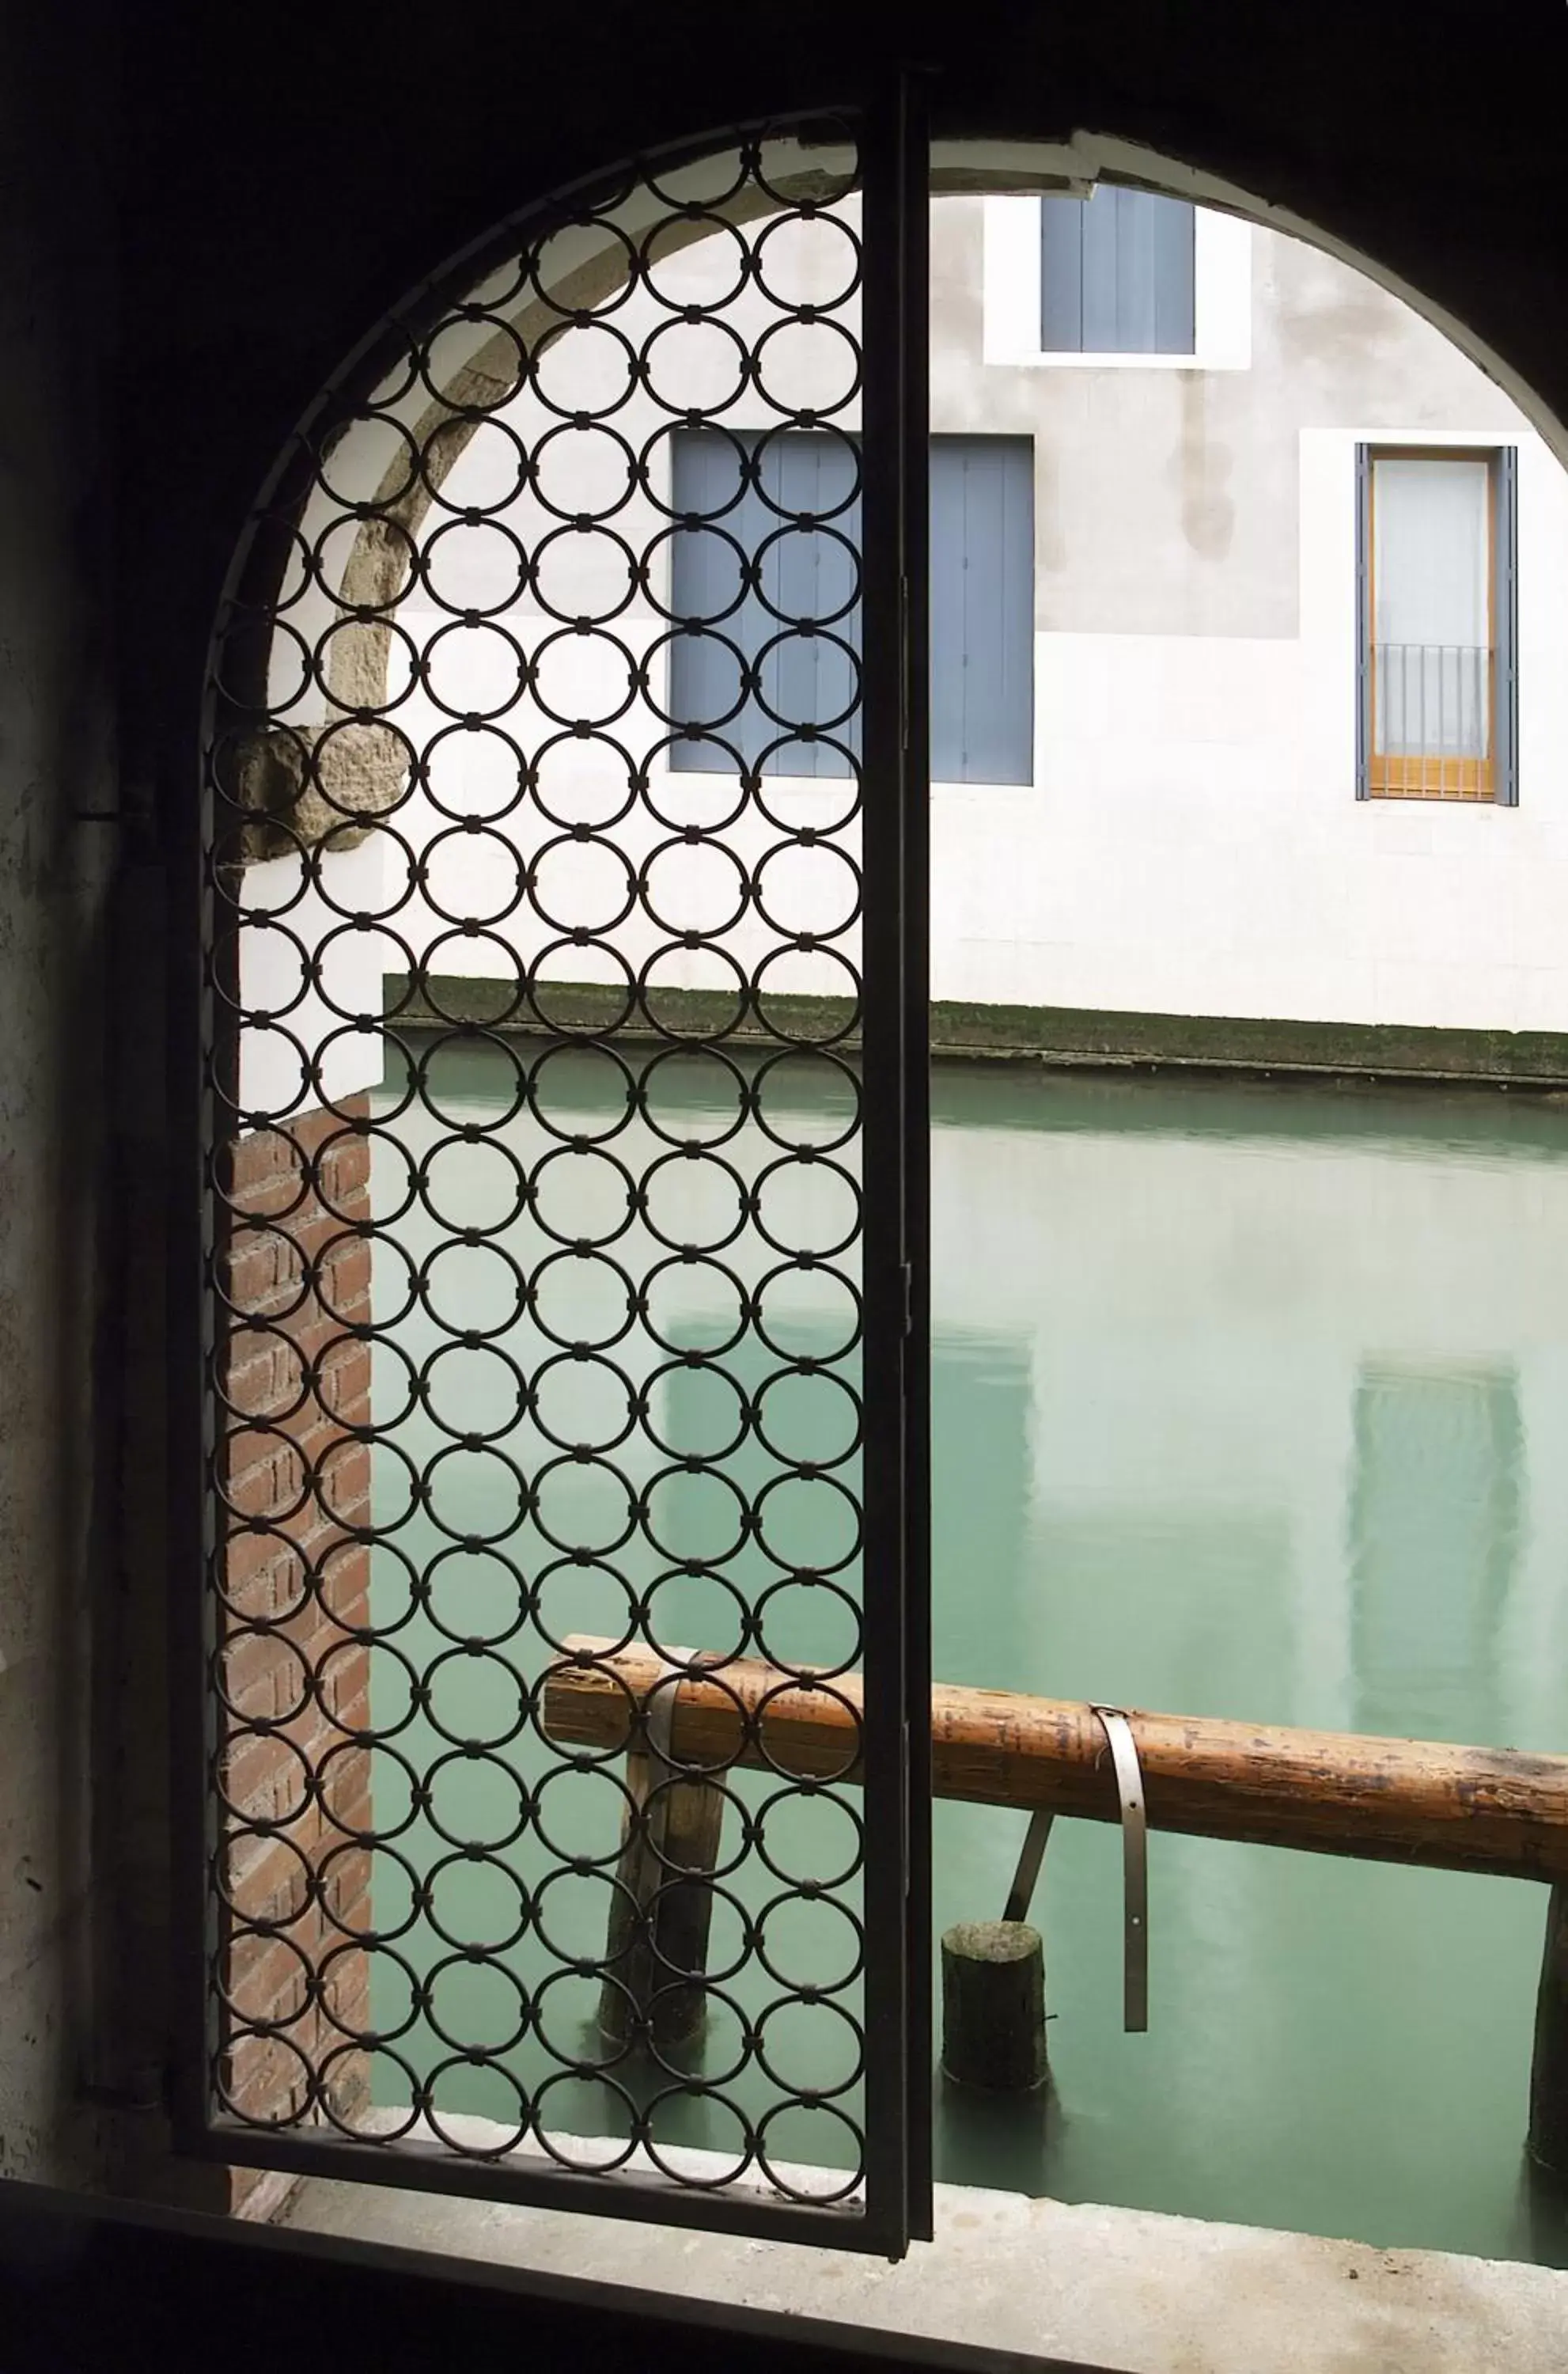 Facade/entrance in Hotel Giudecca Venezia